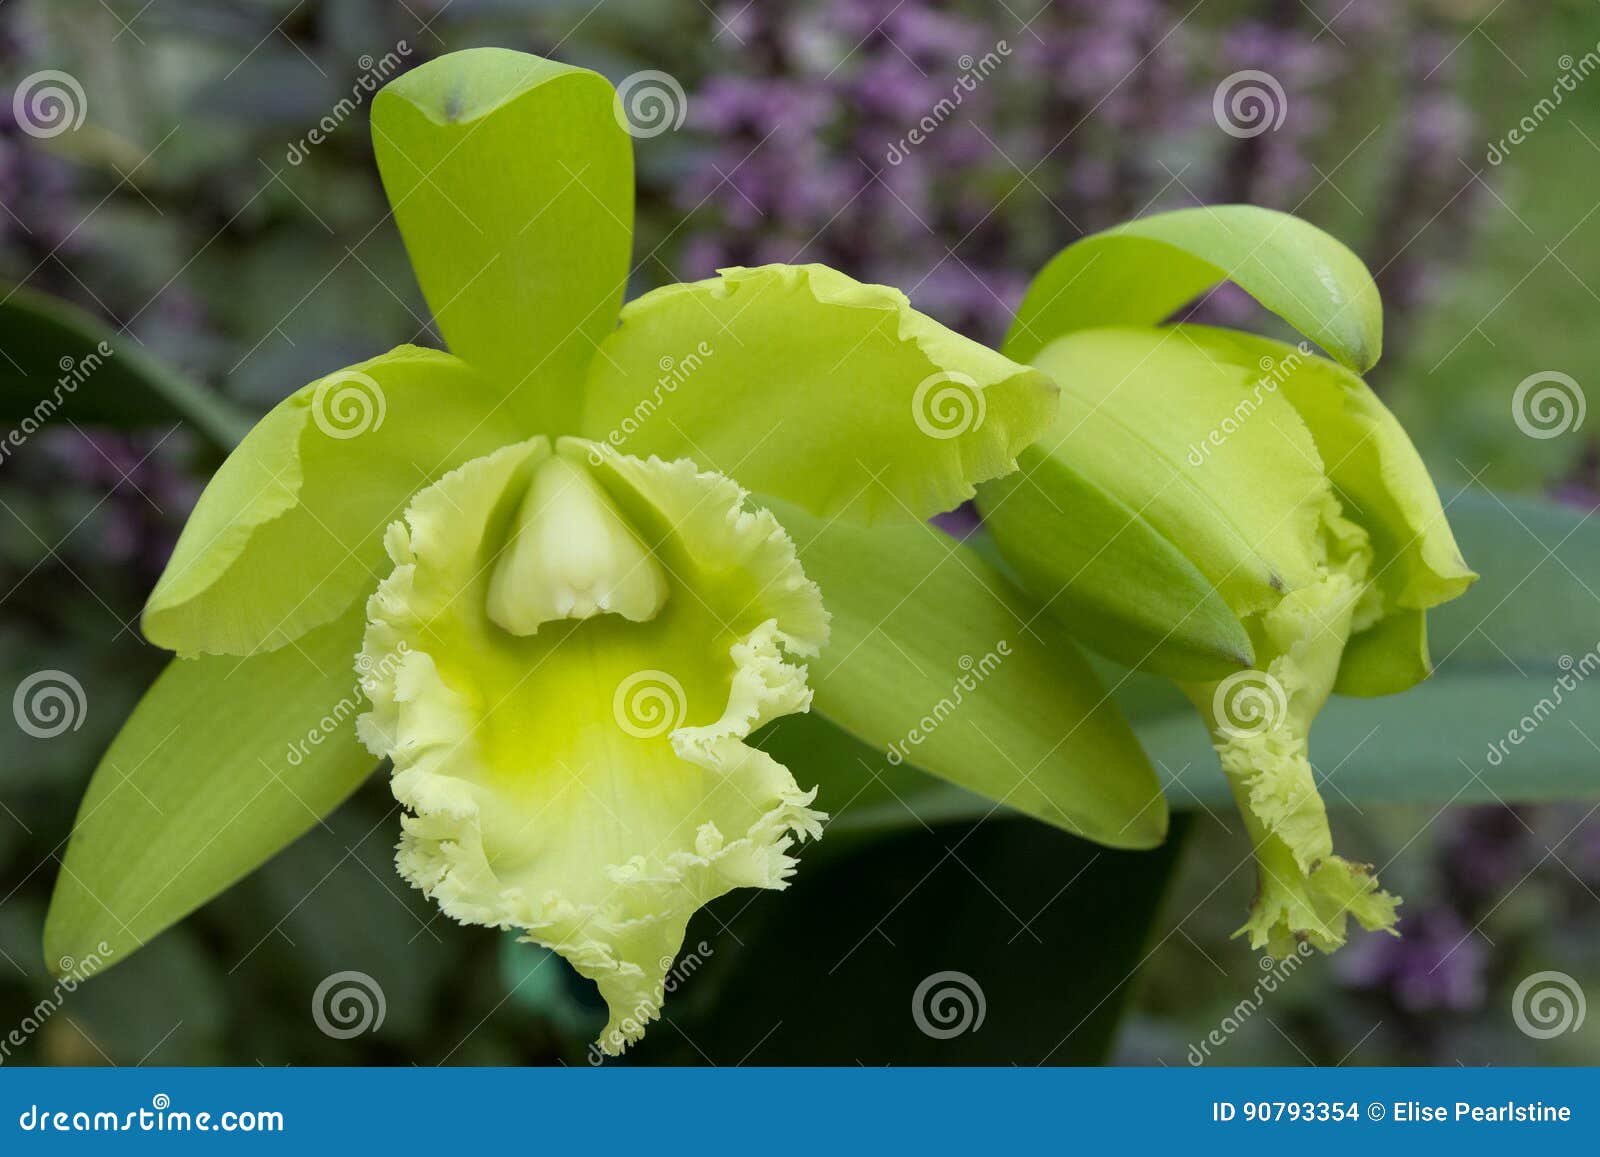 Cattleya-tipo Verde Orquídea Foto de archivo - Imagen de lujoso, tipo:  90793354